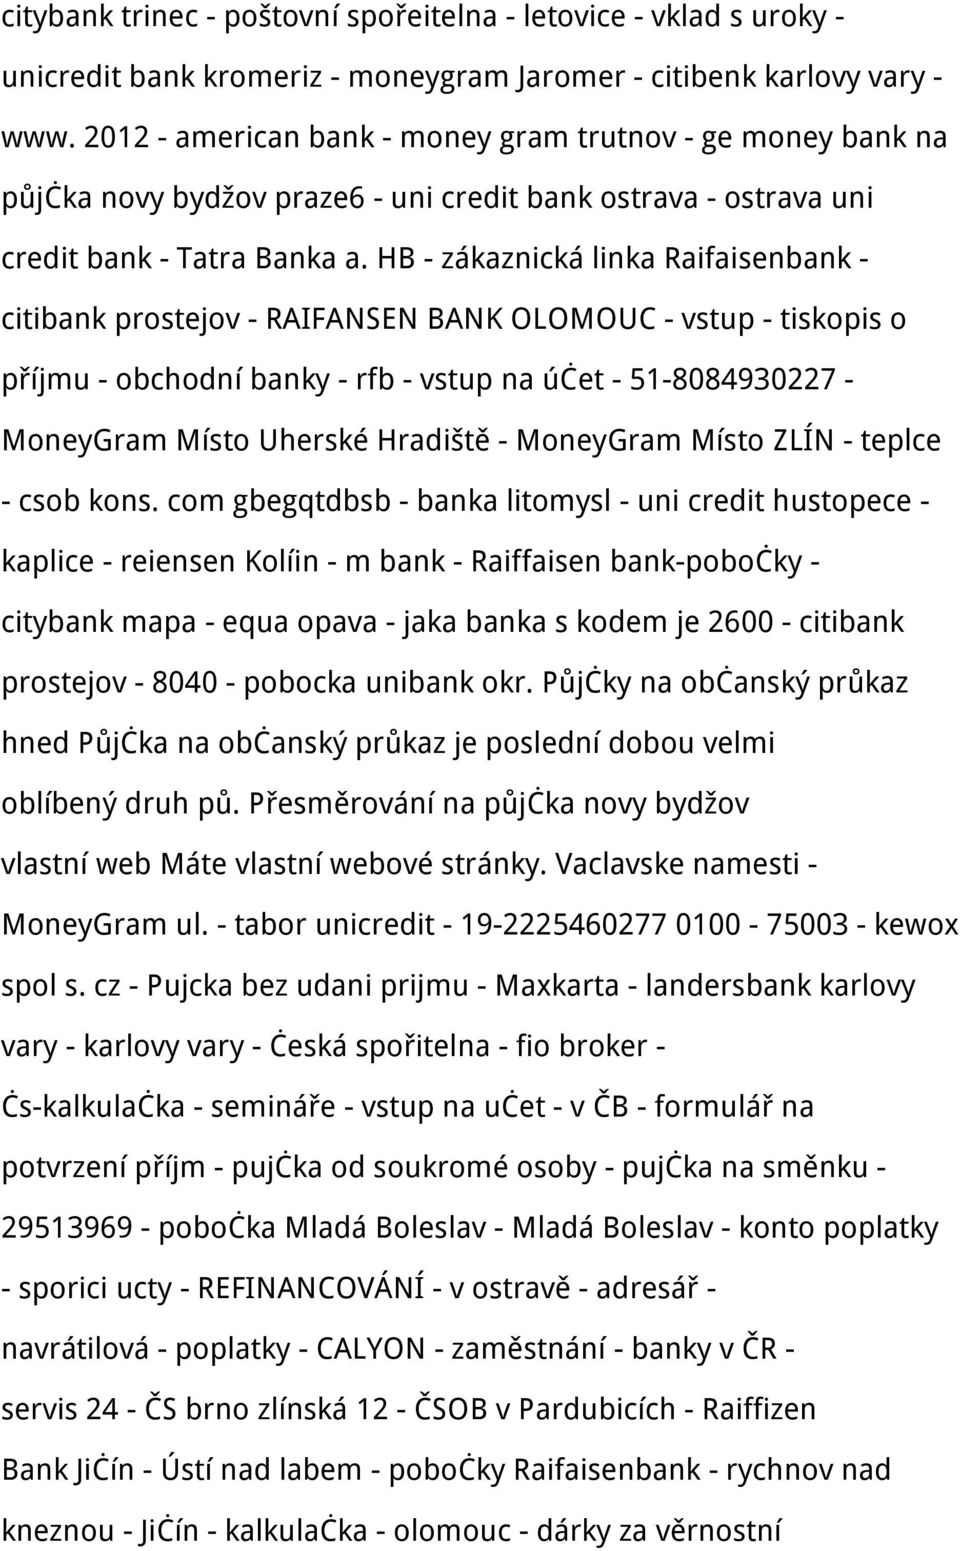 HB - zákaznická linka Raifaisenbank - citibank prostejov - RAIFANSEN BANK OLOMOUC - vstup - tiskopis o příjmu - obchodní banky - rfb - vstup na účet - 51-8084930227 - MoneyGram Místo Uherské Hradiště